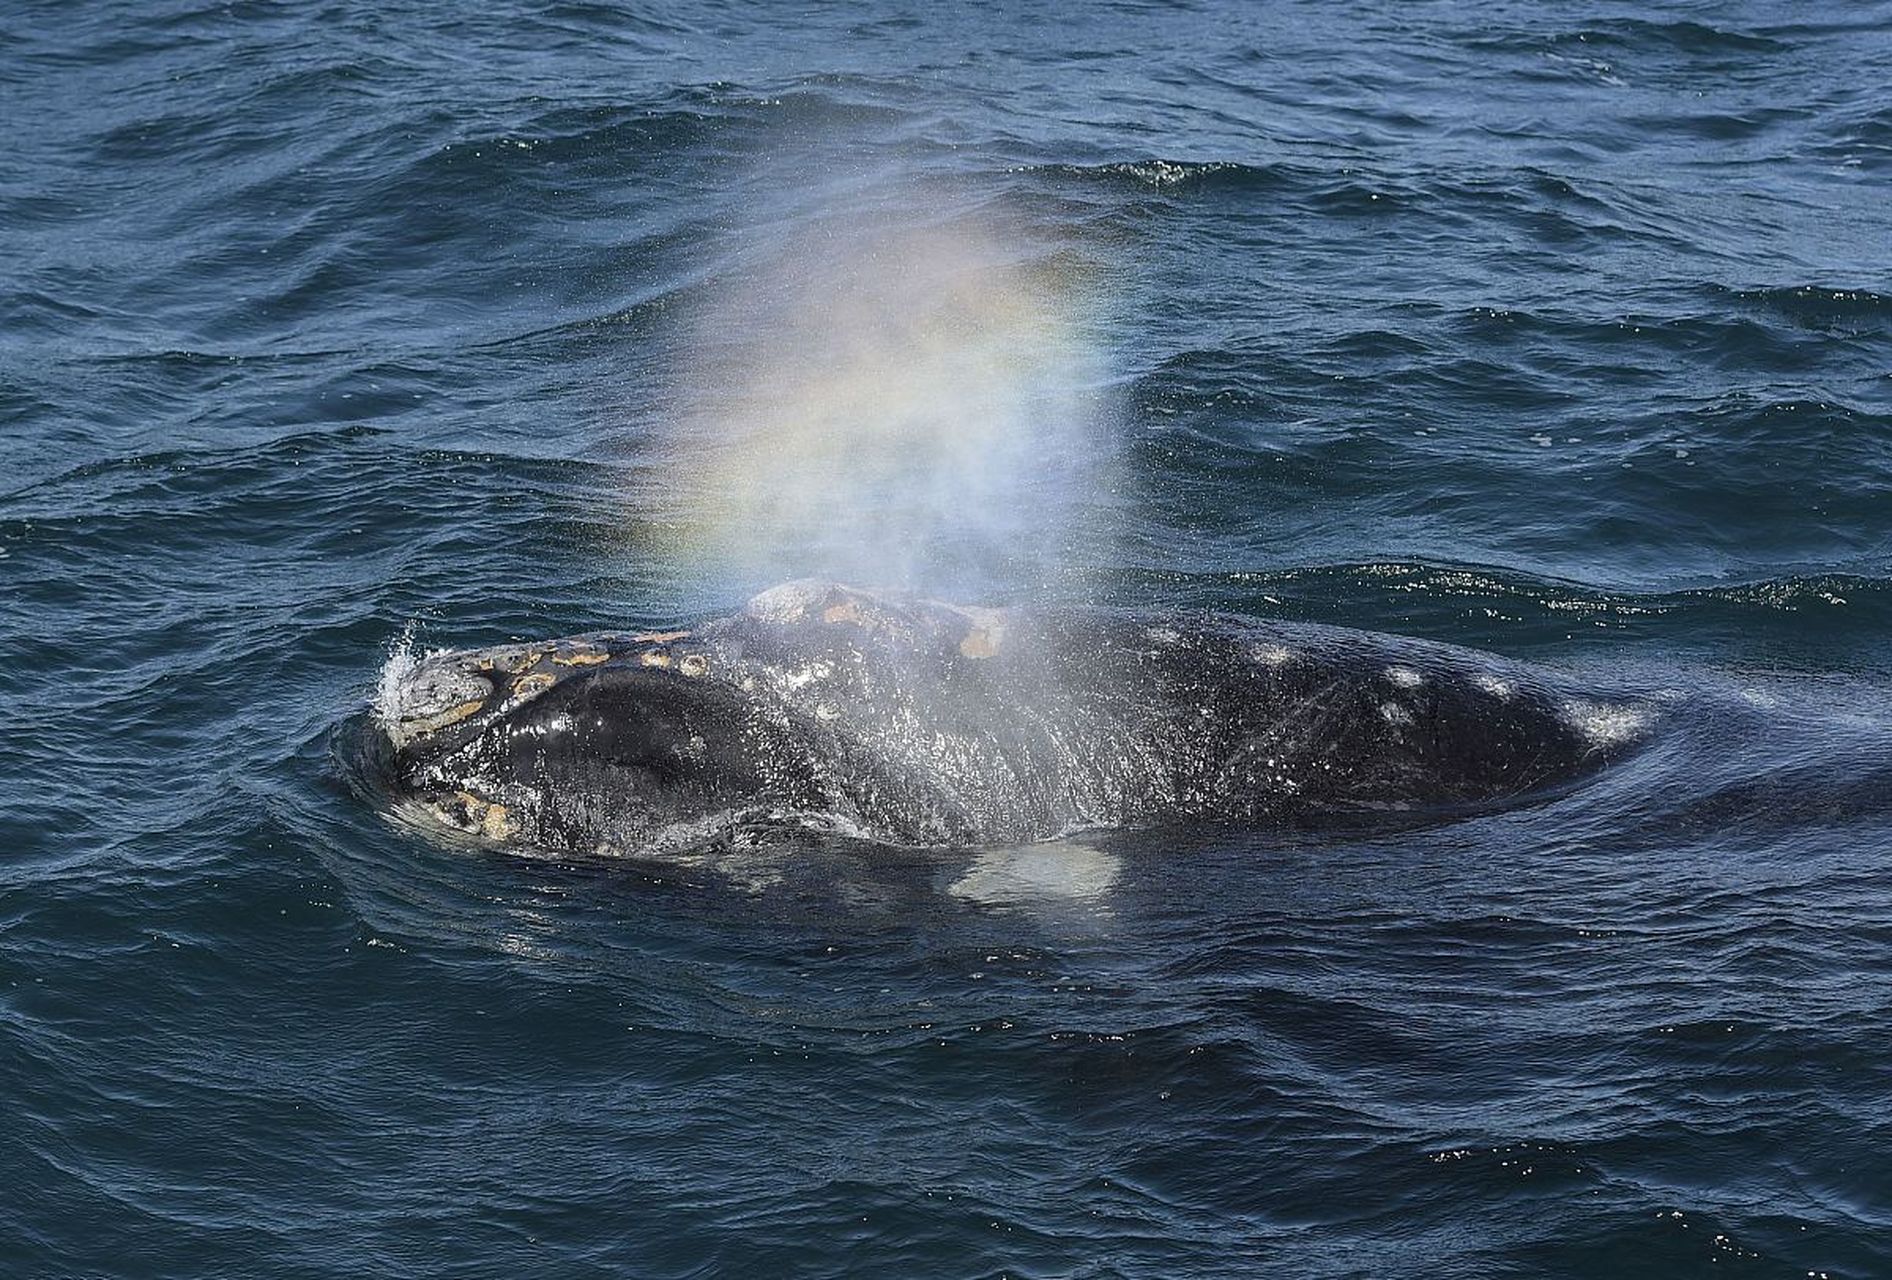 蓝鲸,作为地球上最大的动物,蓝鲸的庞大身躯令人惊叹